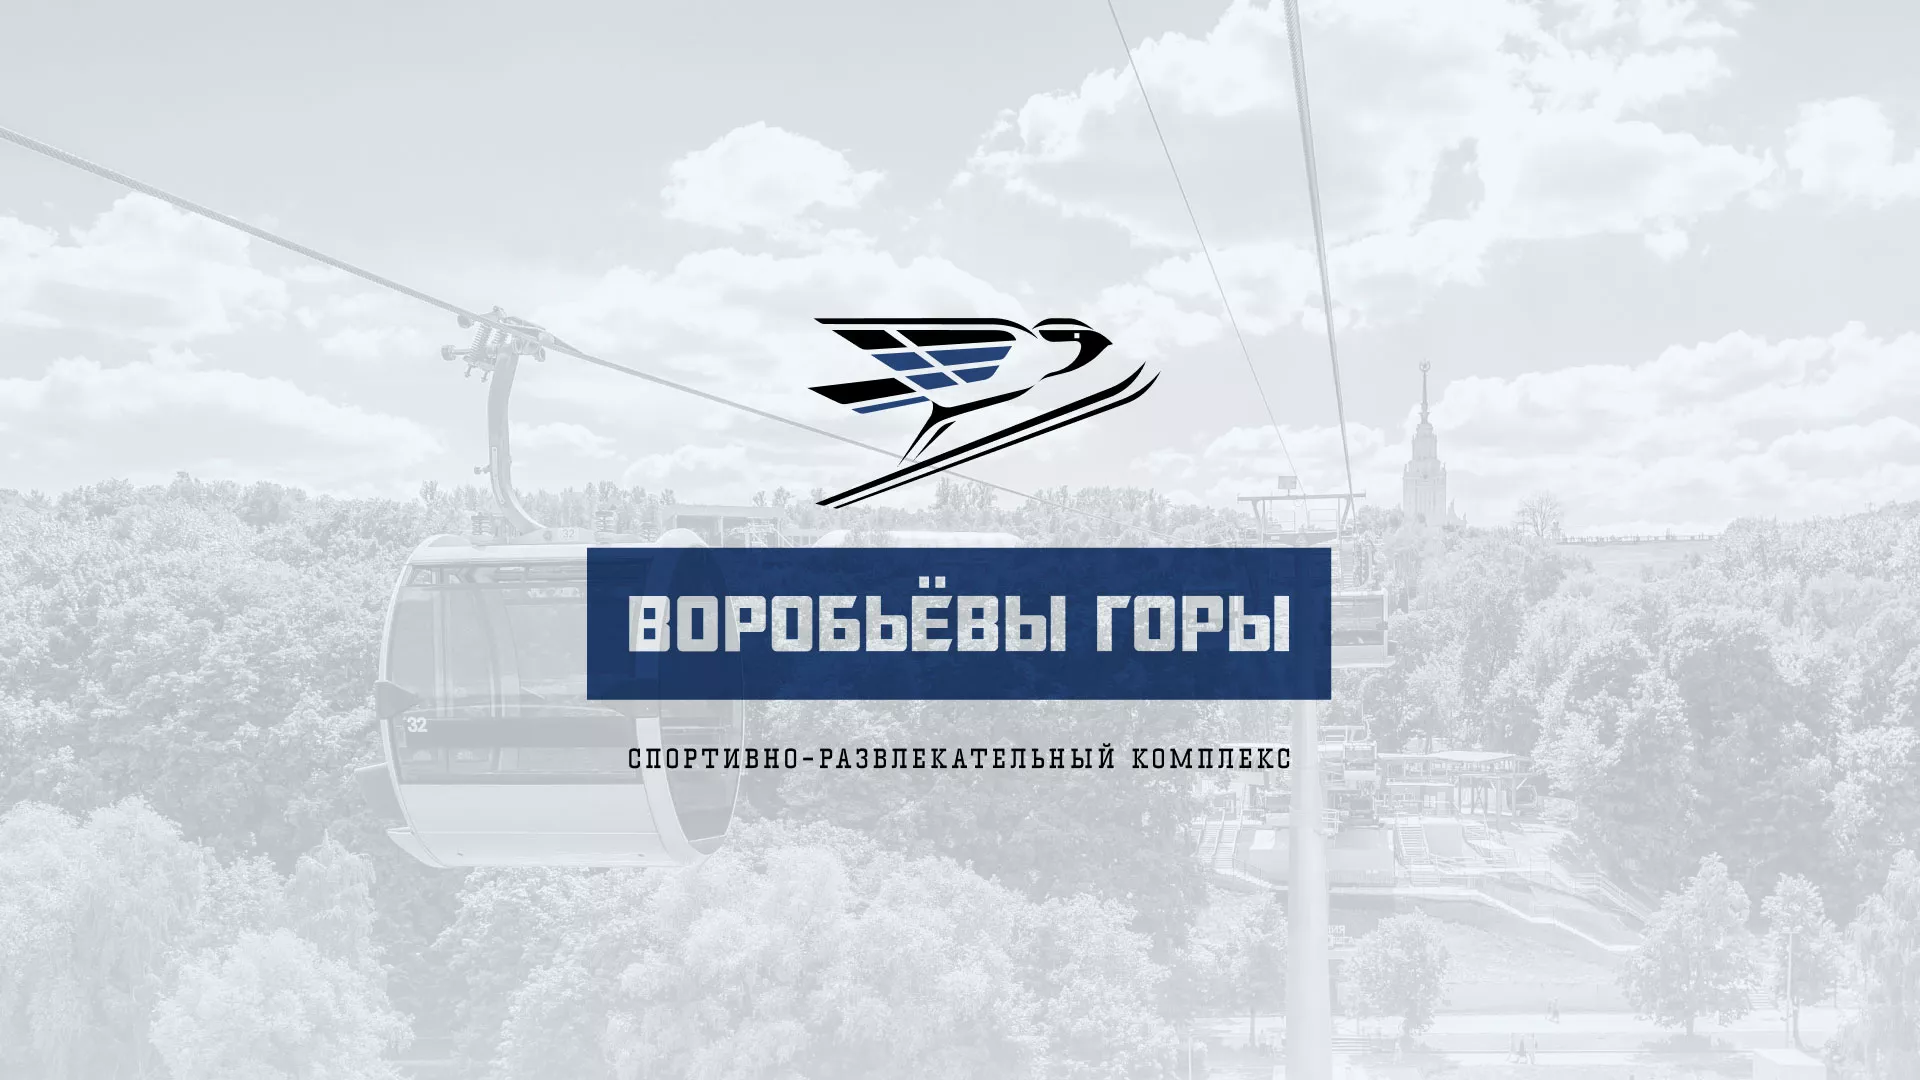 Разработка сайта в Котельниково для спортивно-развлекательного комплекса «Воробьёвы горы»